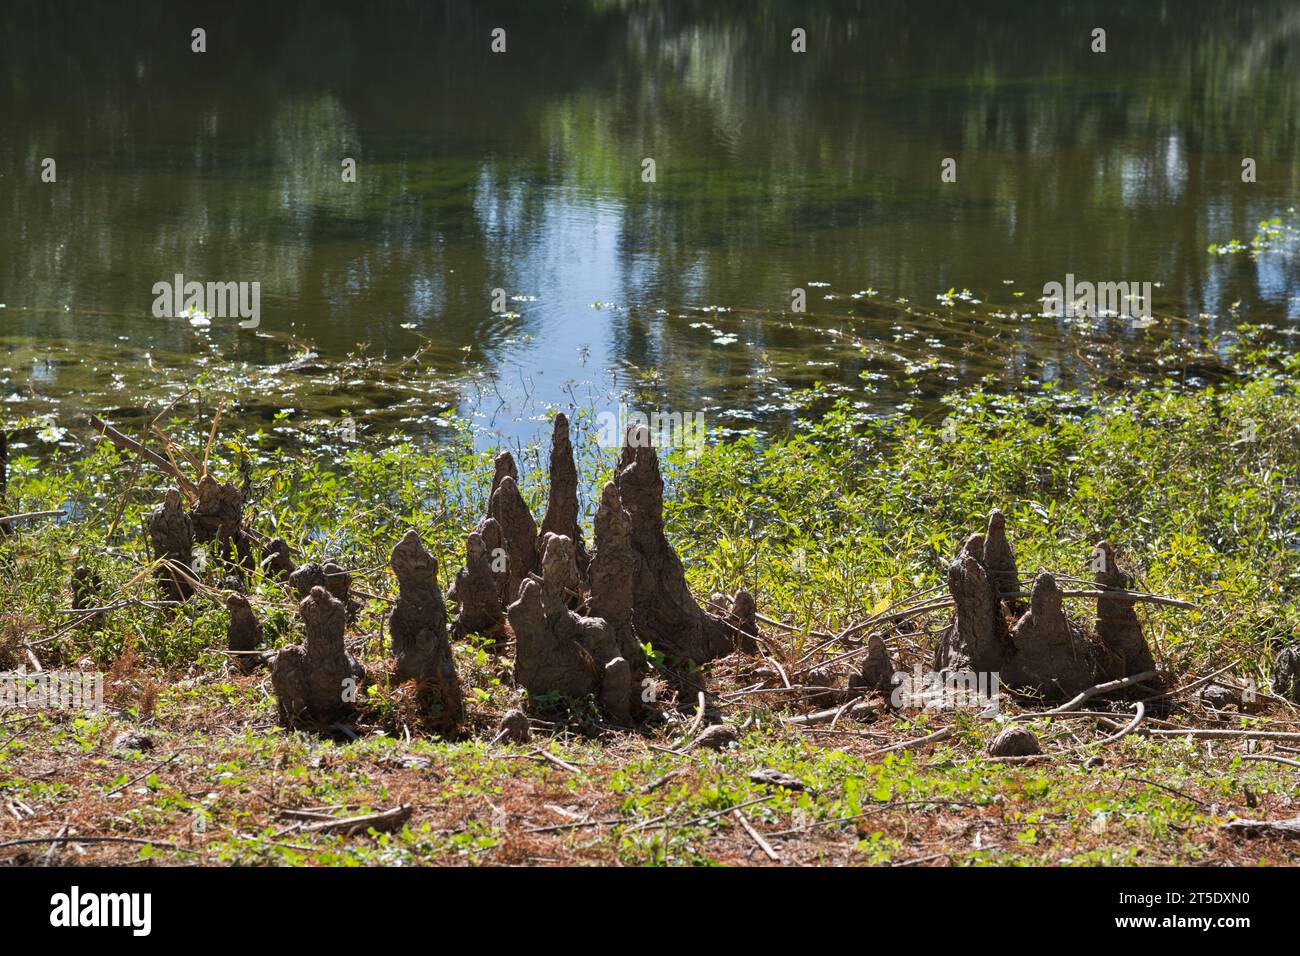 Strutture del ginocchio di cipresso calvo che sporgono dal bordo di un lago d'acqua dolce a Houston, Texas. Woody cresce sopra le radici dell'albero con funzione sconosciuta. Foto Stock